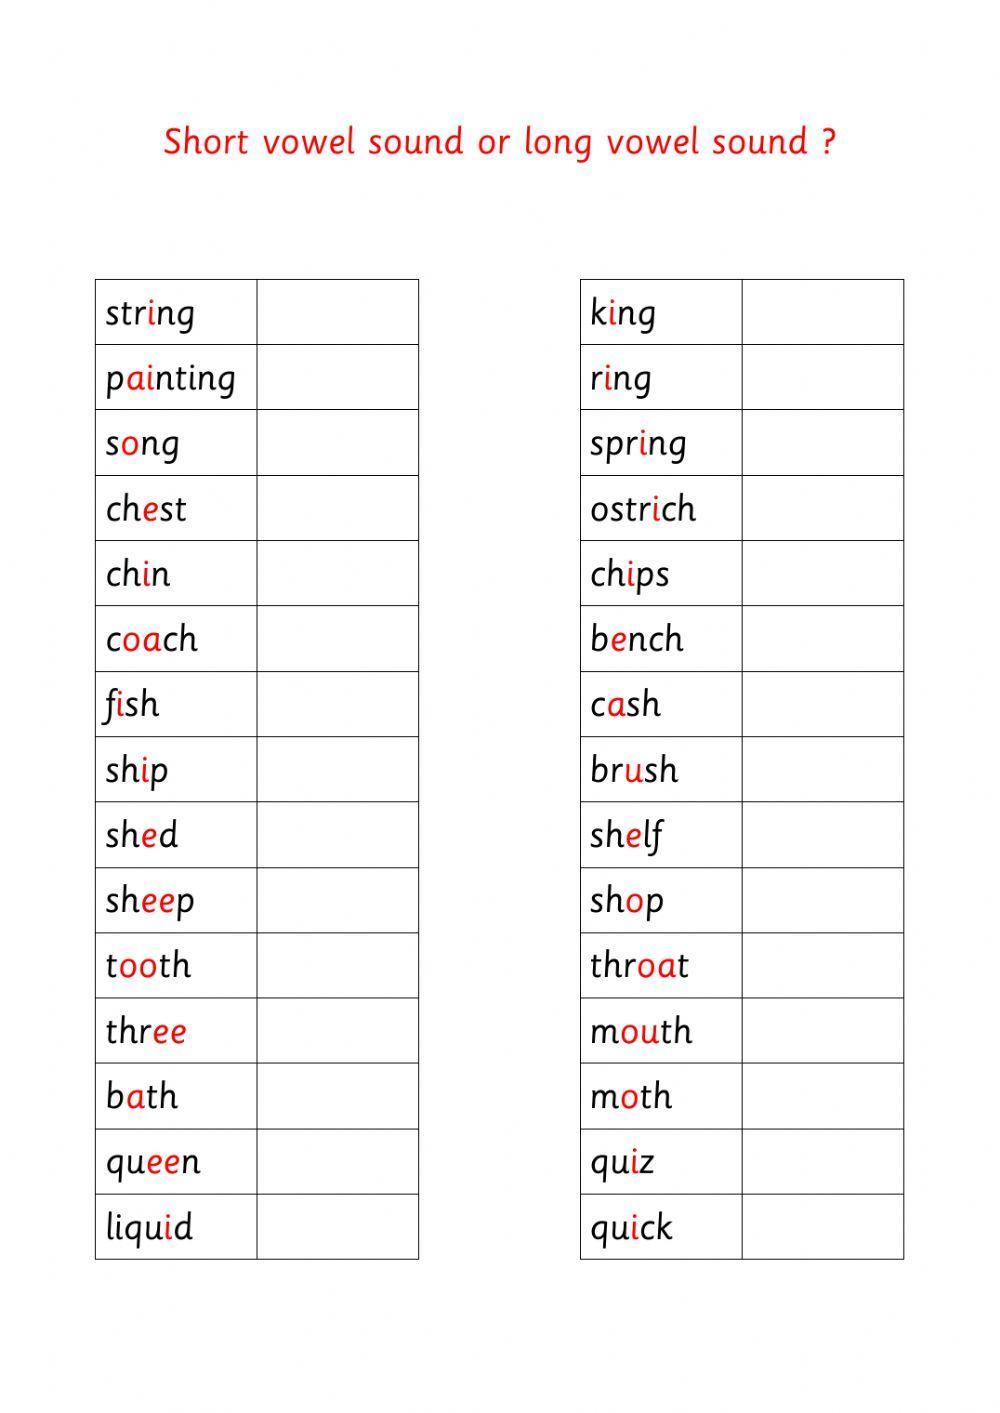 Short vowel sound or long vowel sound